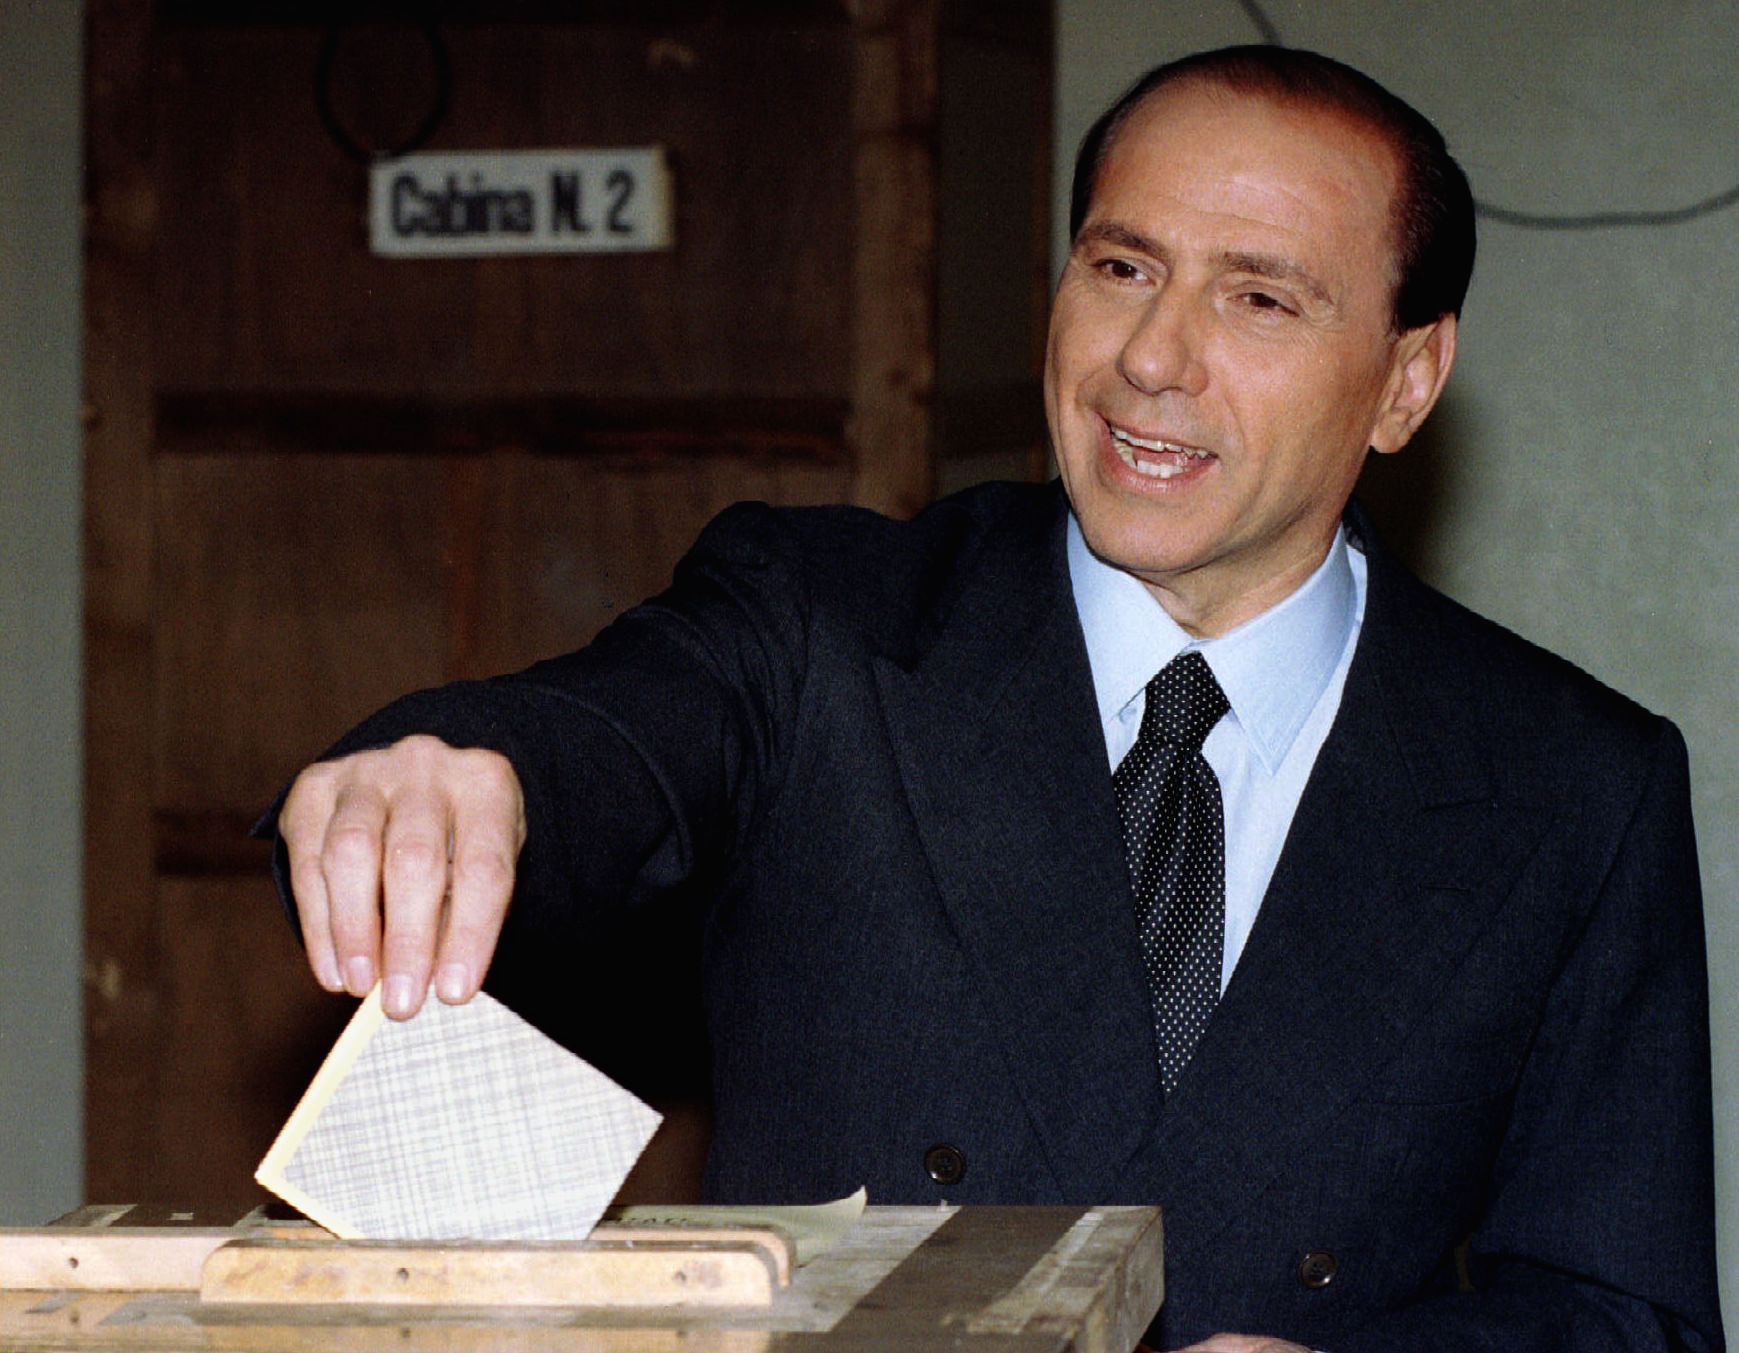 Silvio Berlusconi (29. September 1936 - 12. Juni 2023), früherer italienischer Ministerpräsident, Unternehmer und Milliardär